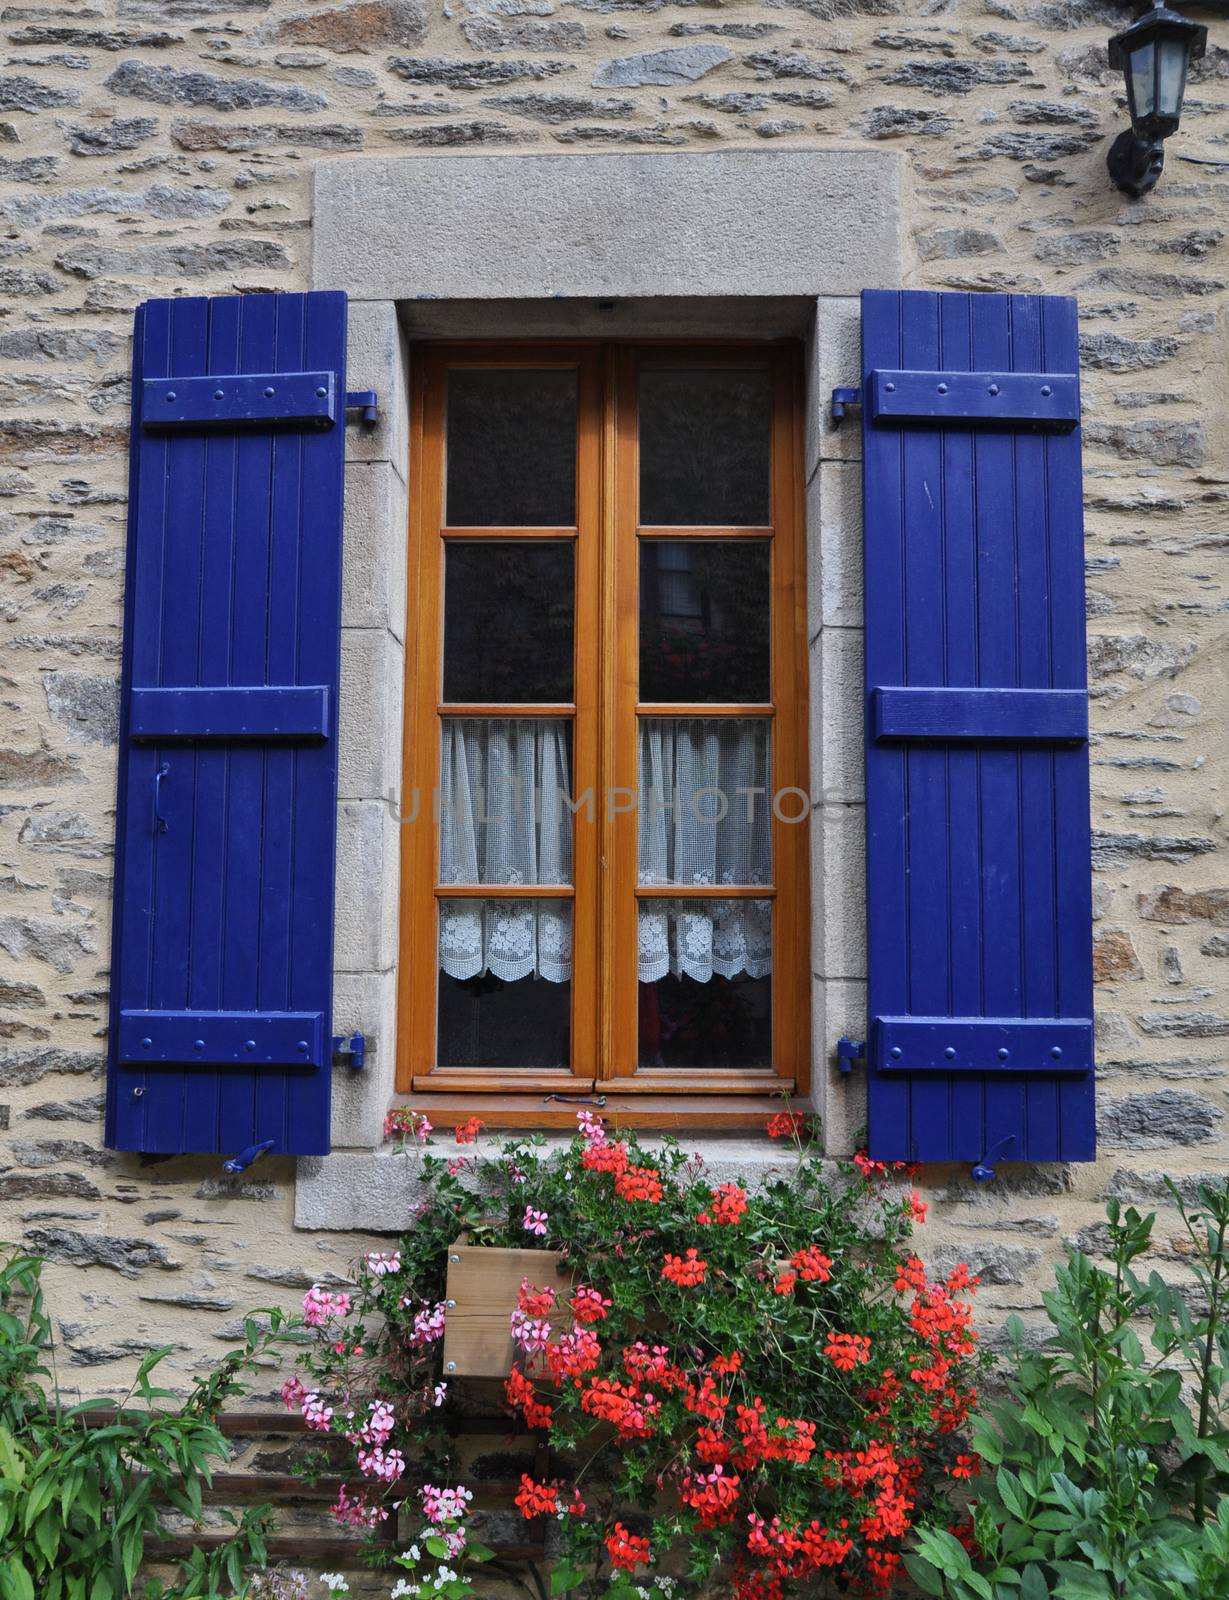 Pretty window Rochefort-en-Terre, France. by dpe123